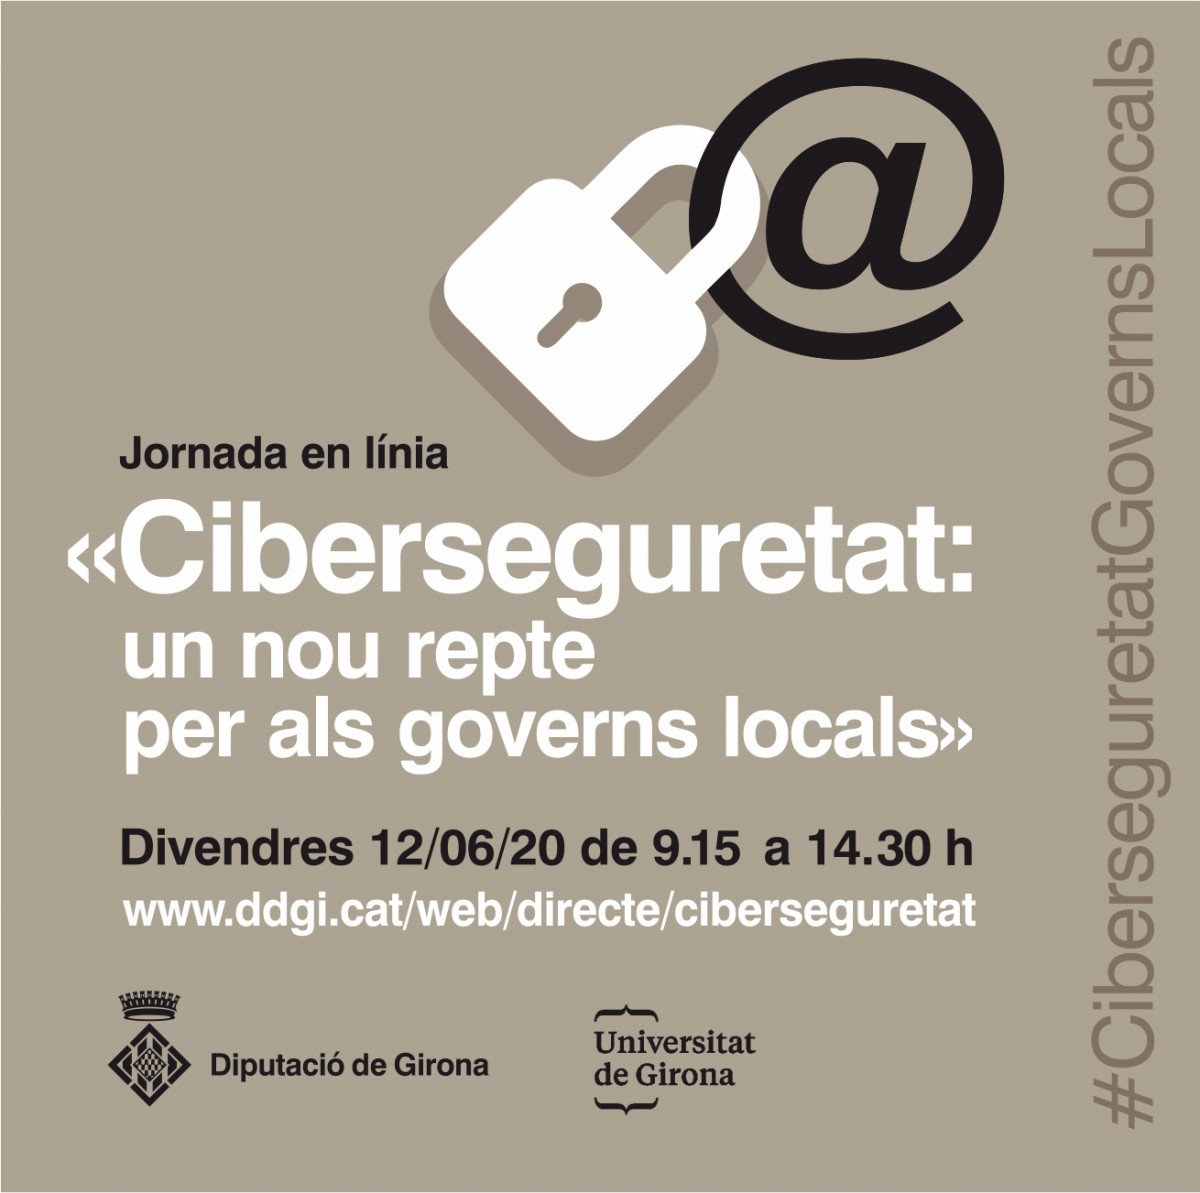 Cartell de la jornada en línia sobre cibersguretat de la Diputació de Girona i la UdG.